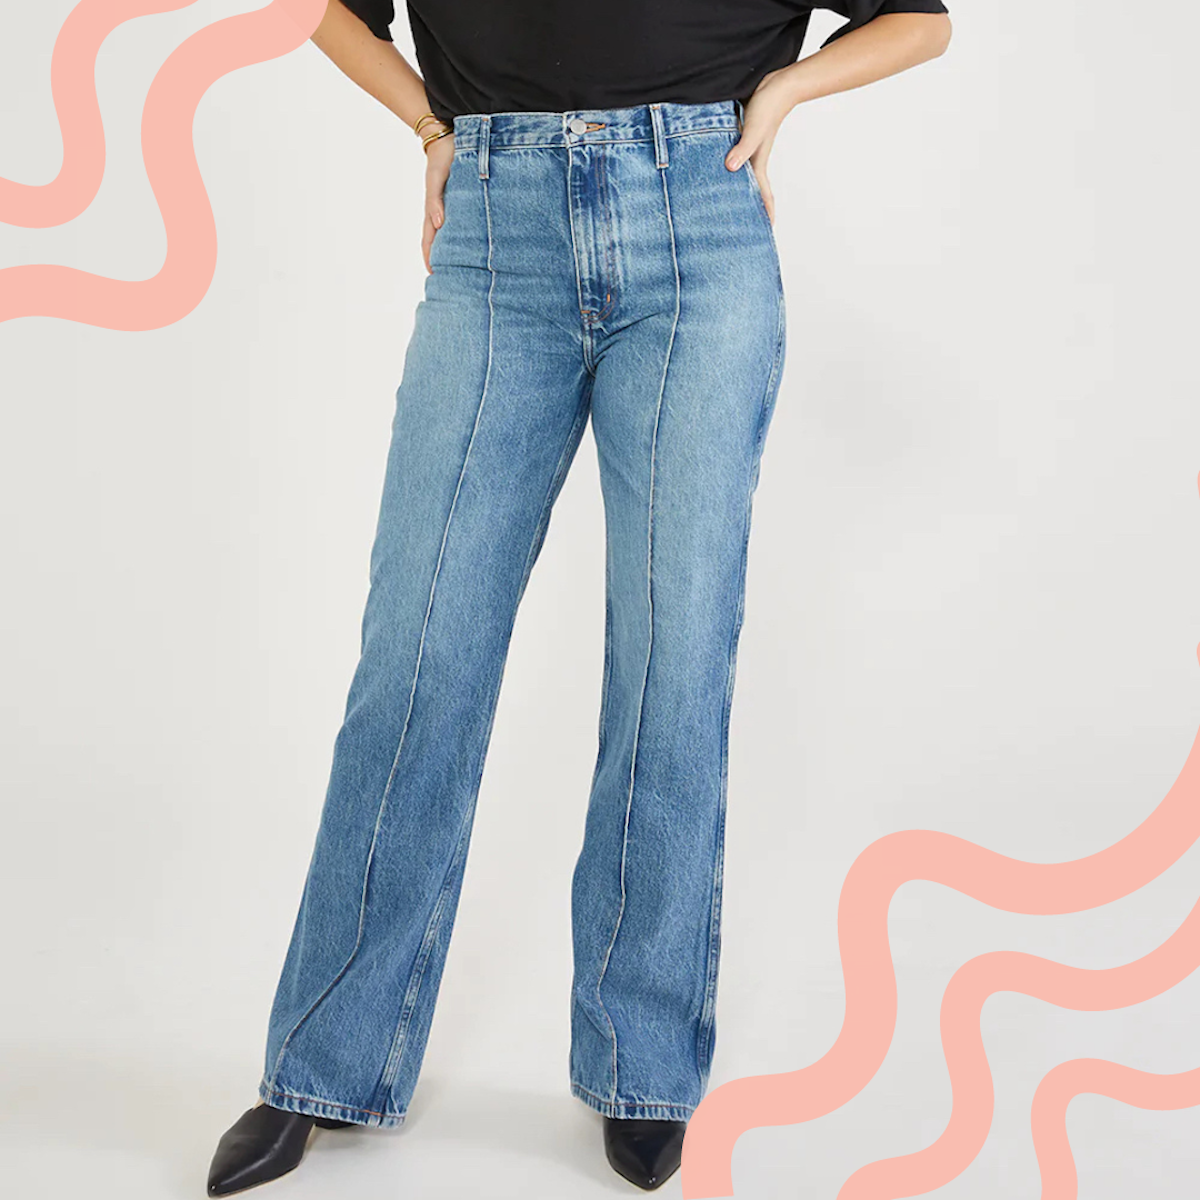 denim trends for 2022 straight leg jeans